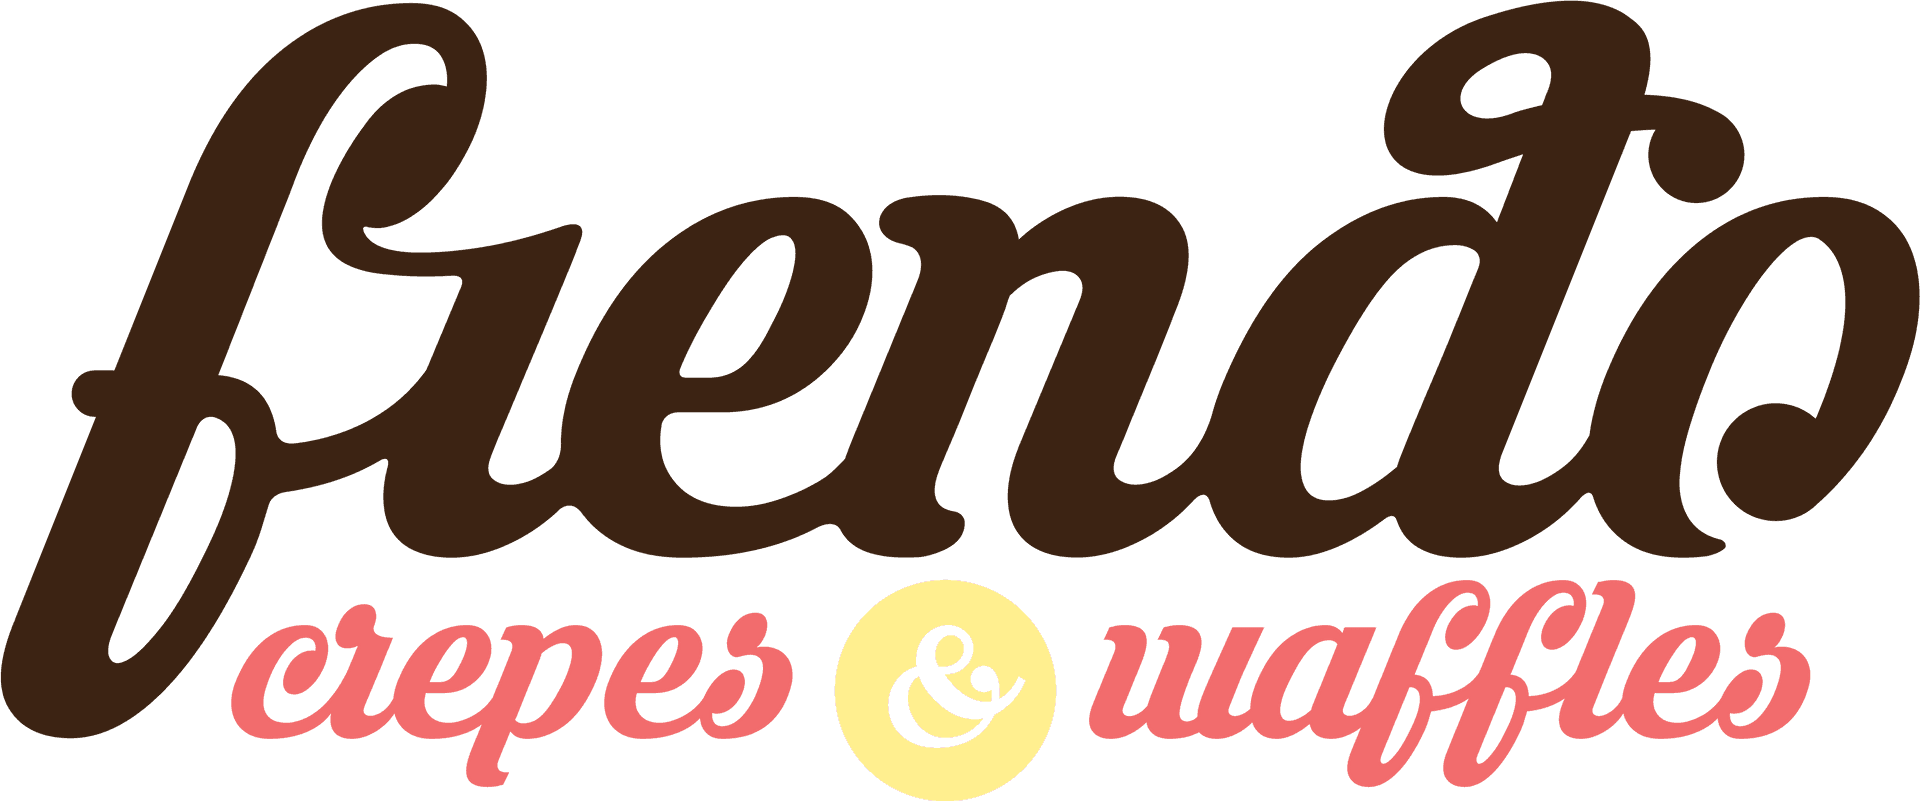 Crepes And Waffles Logo PNG